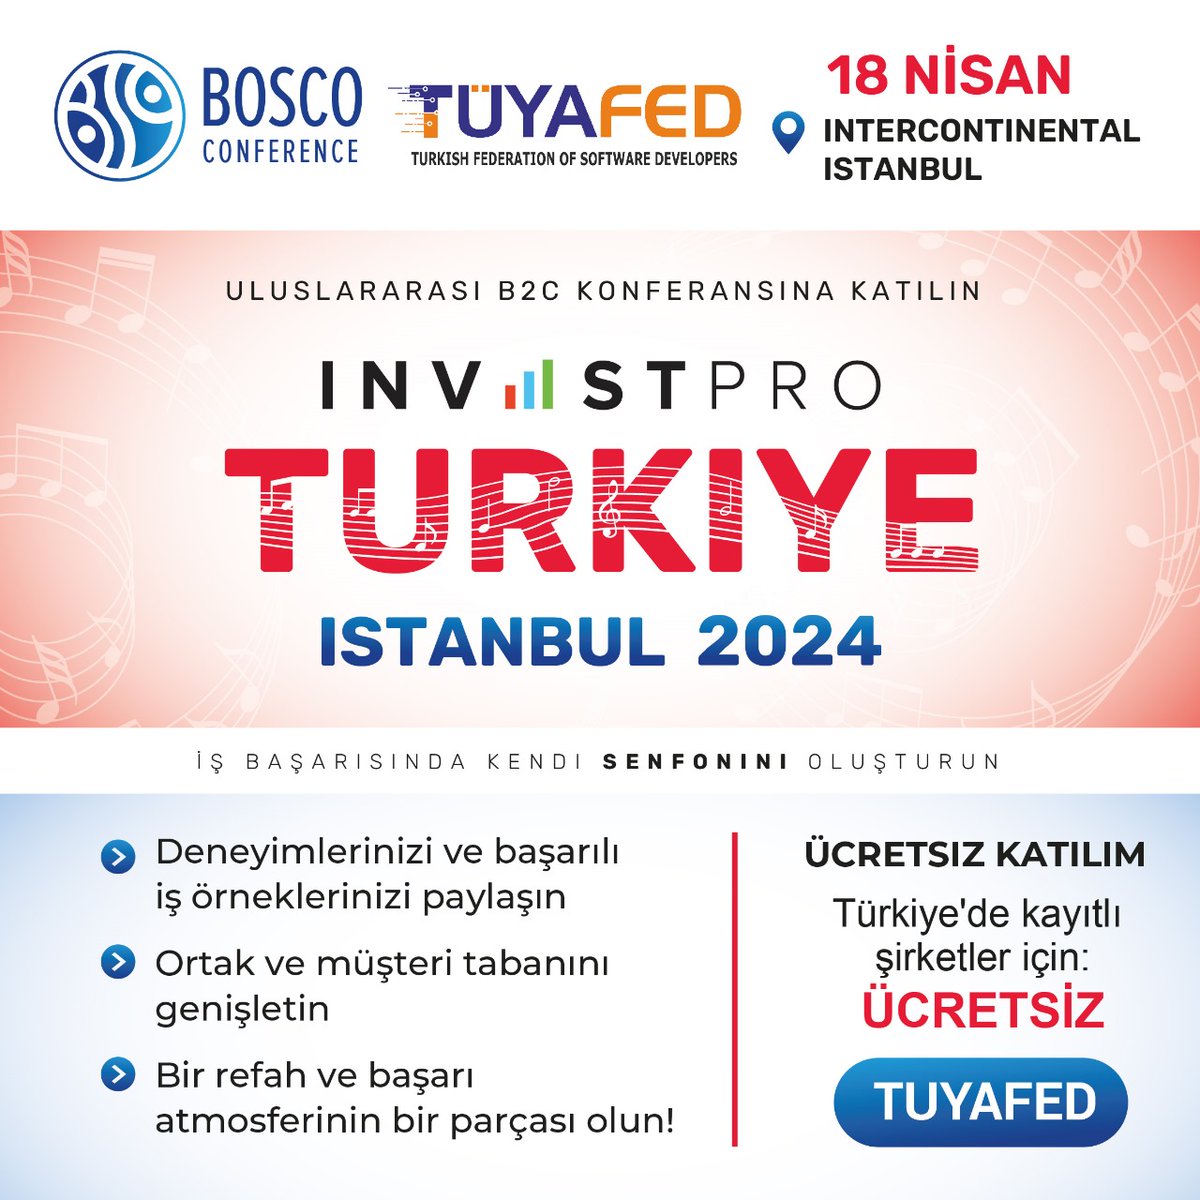 Uluslararası Bosco Konferansı,18 Nisan 2024 Tarihinde InterContinental İstanbul Oteli'nde gerçekleşecek. Fırsattan yararlanın - bağlantı üzerinden reg.bosco-conference.com/gxnzkp Promosyon kodu: TÜYAFED kullanarak ÜCRETSİZ kaydolun